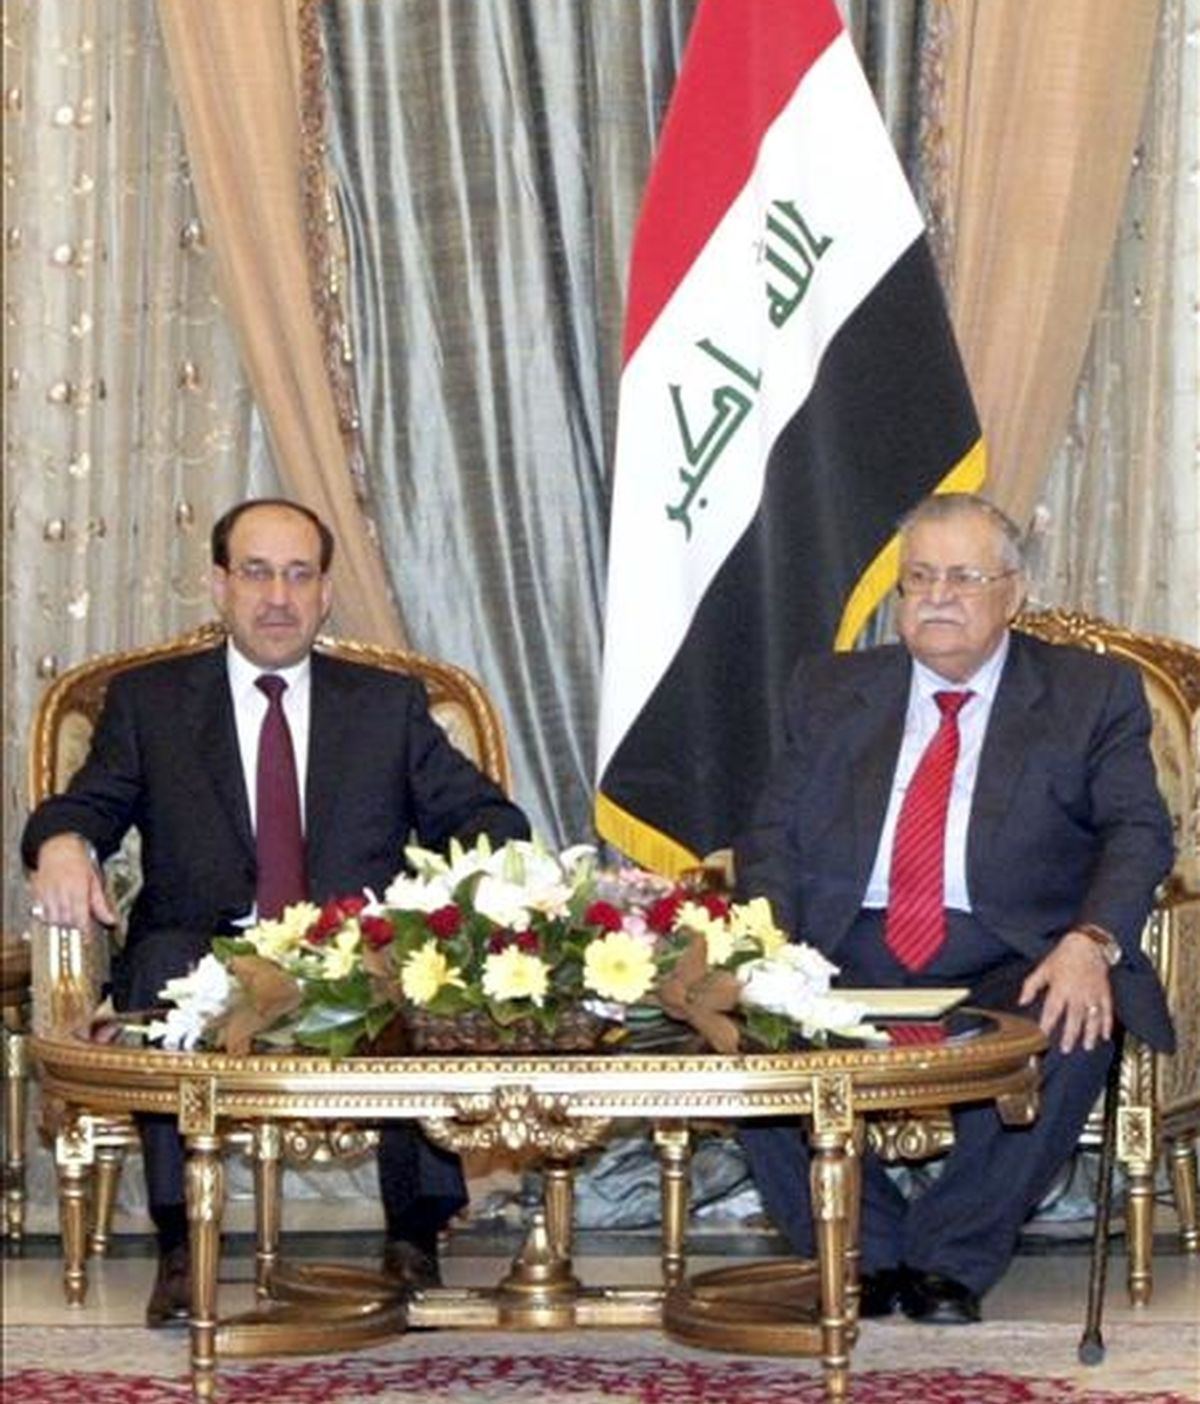 Imagen facilitada por el gobierno de Irak que muestra al presidente iraquí, Jalal Talabani, (d), junto al primer ministro Nuri al-Maliki, (i), durante la ceremonia oficial para asignar los nuevos cargos del gobierno de Maliki. EFE